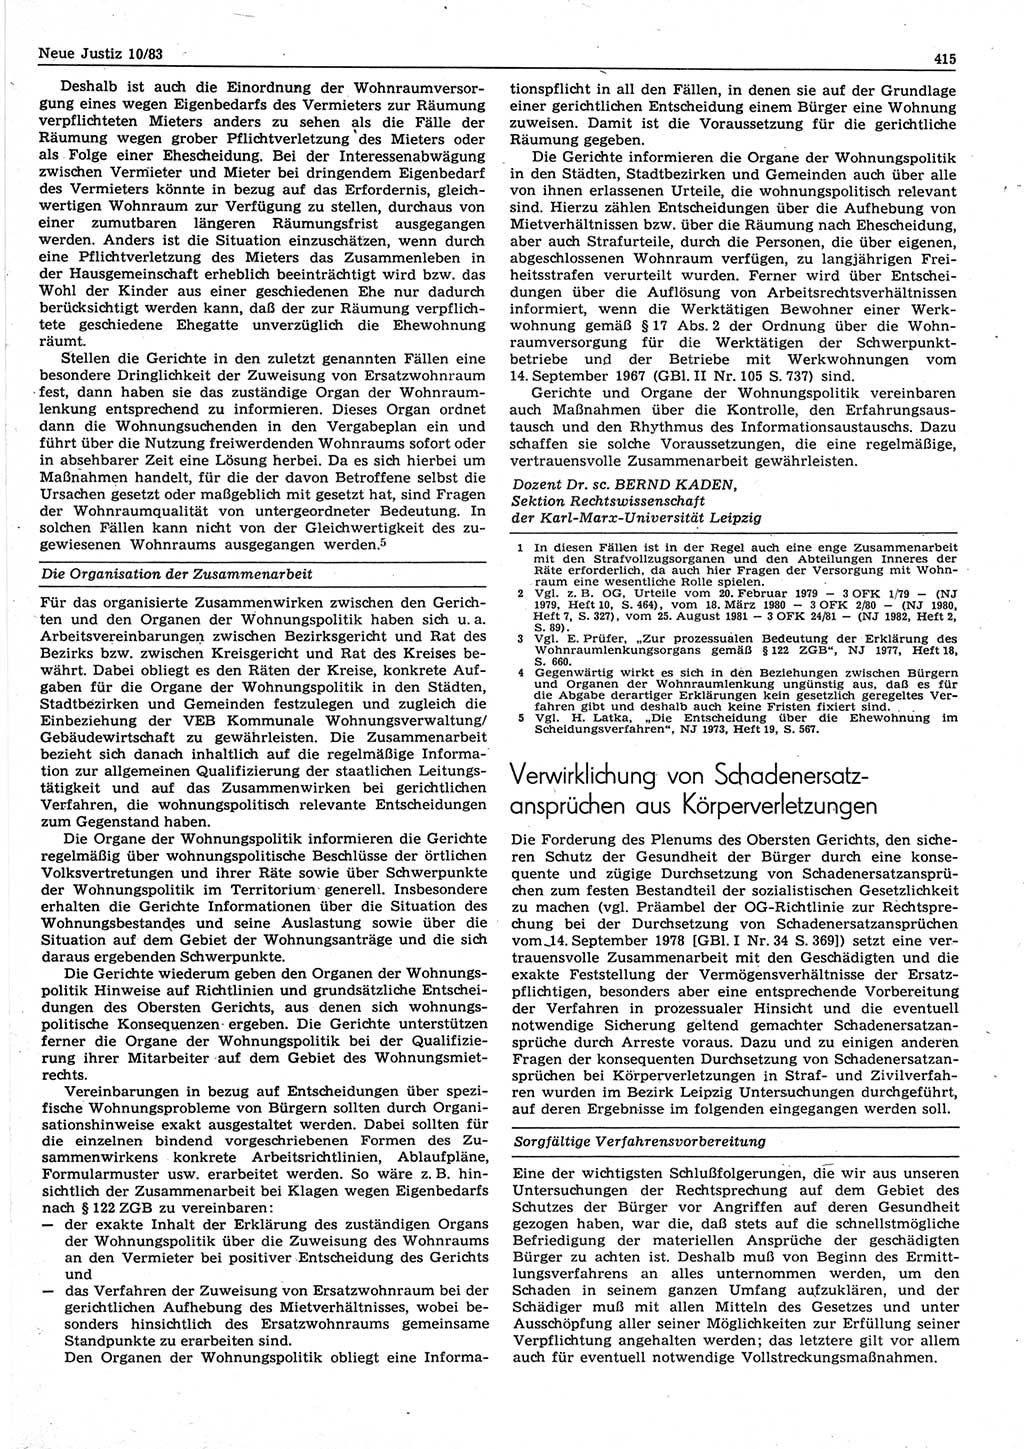 Neue Justiz (NJ), Zeitschrift für sozialistisches Recht und Gesetzlichkeit [Deutsche Demokratische Republik (DDR)], 37. Jahrgang 1983, Seite 415 (NJ DDR 1983, S. 415)